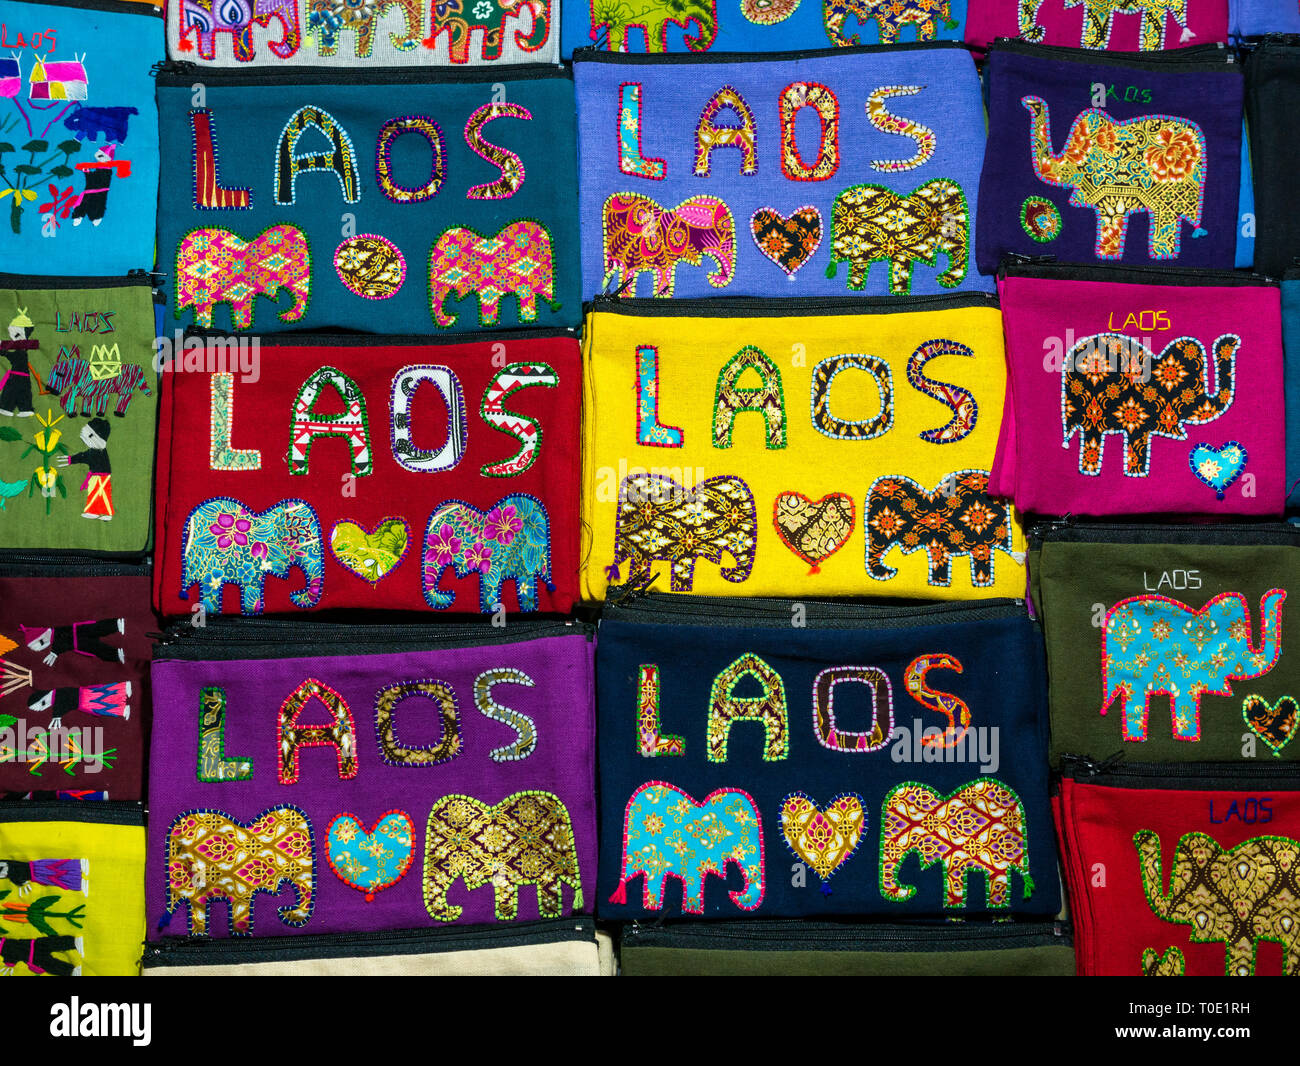 Affichage des sacs colorés avec le Laos et les éléphants stitching souvenirs au marché de nuit, Luang Prabang, Laos, Asie Banque D'Images